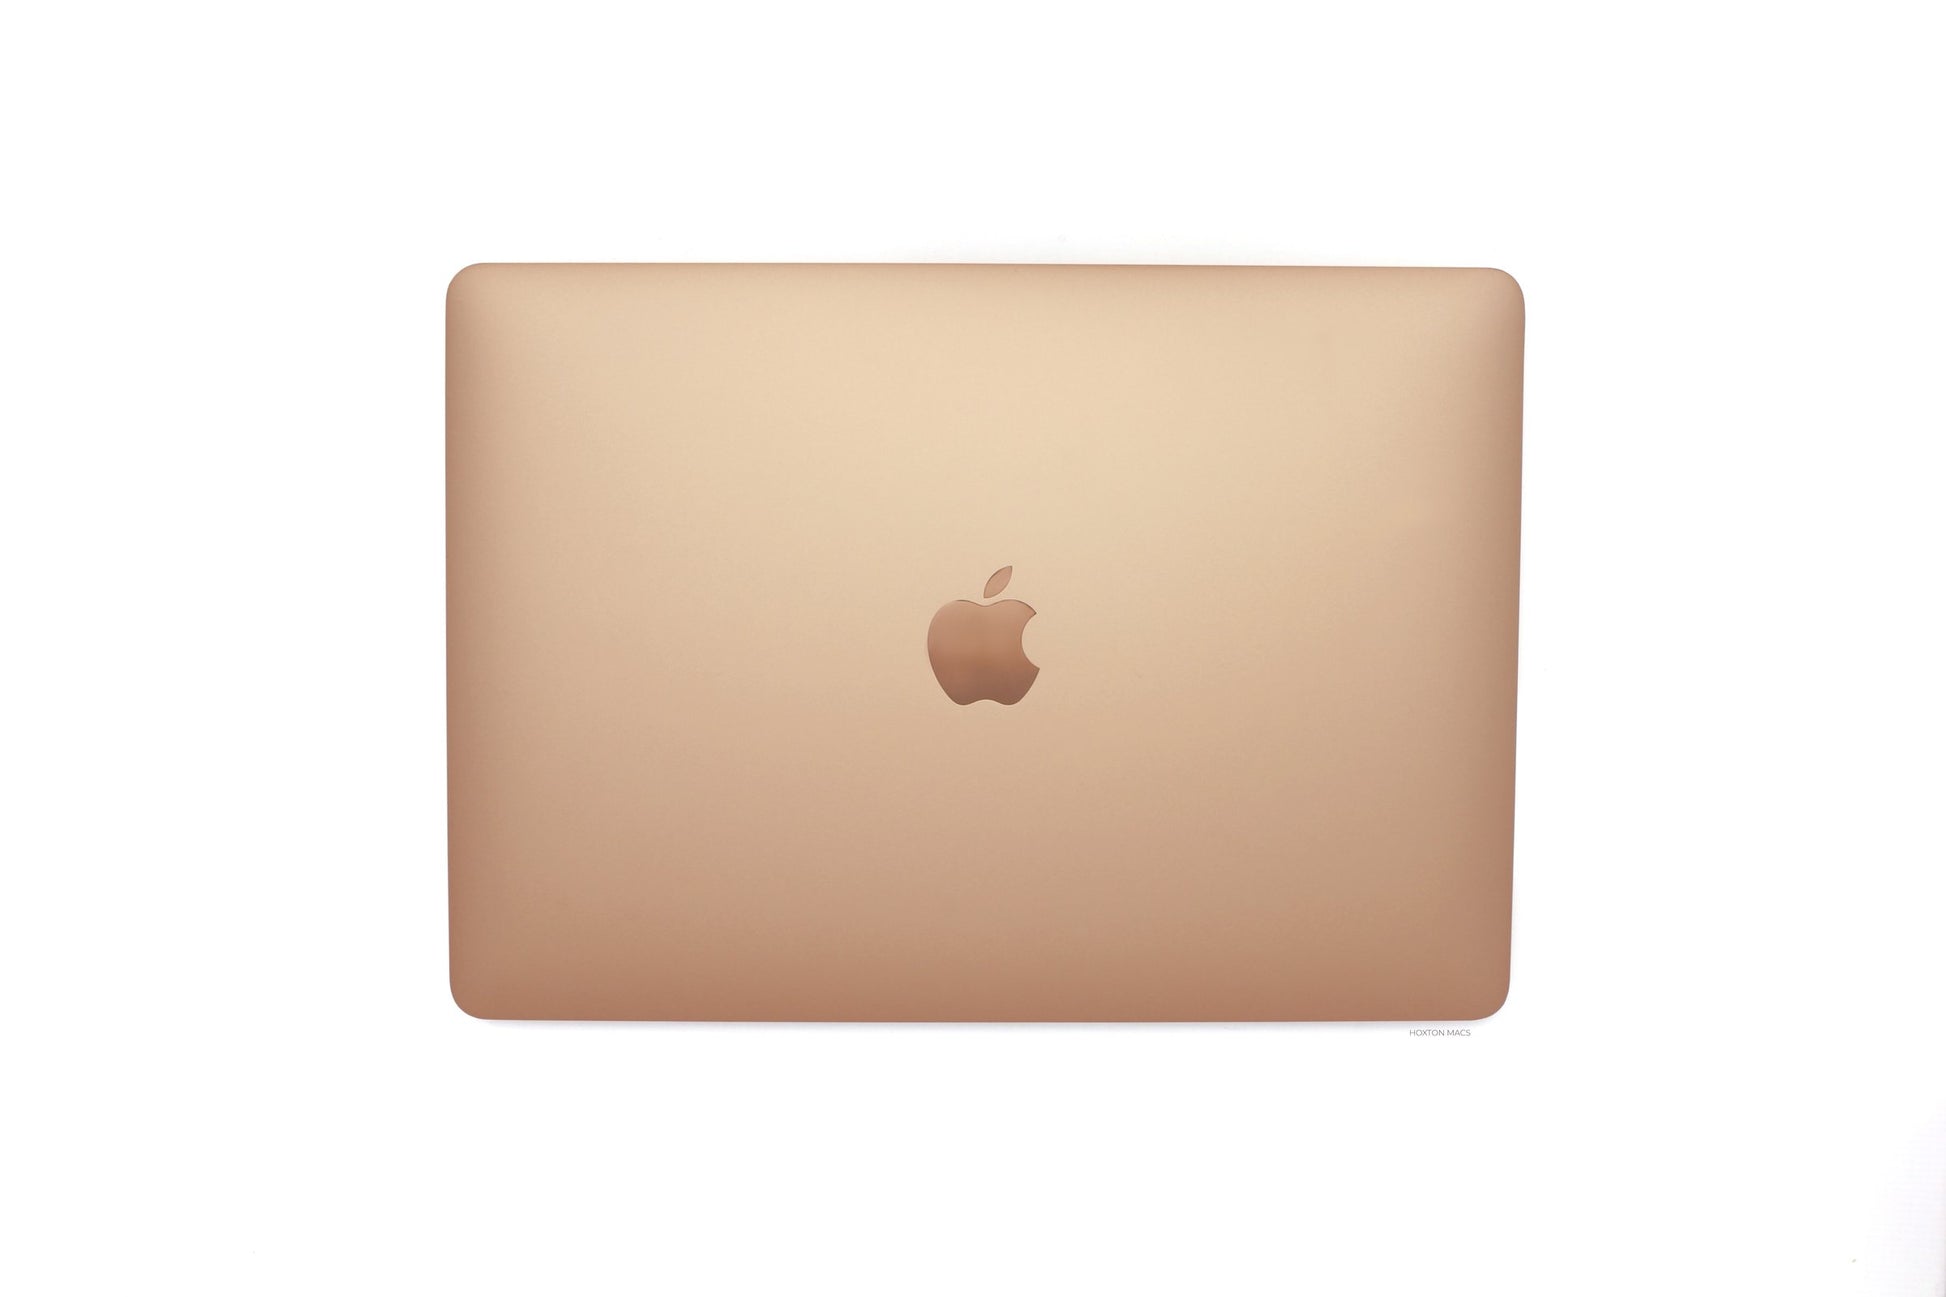 MacBook Air i5 1.1GHz 13 inch (Early 2020) 512GB SSD - Silver - Fair